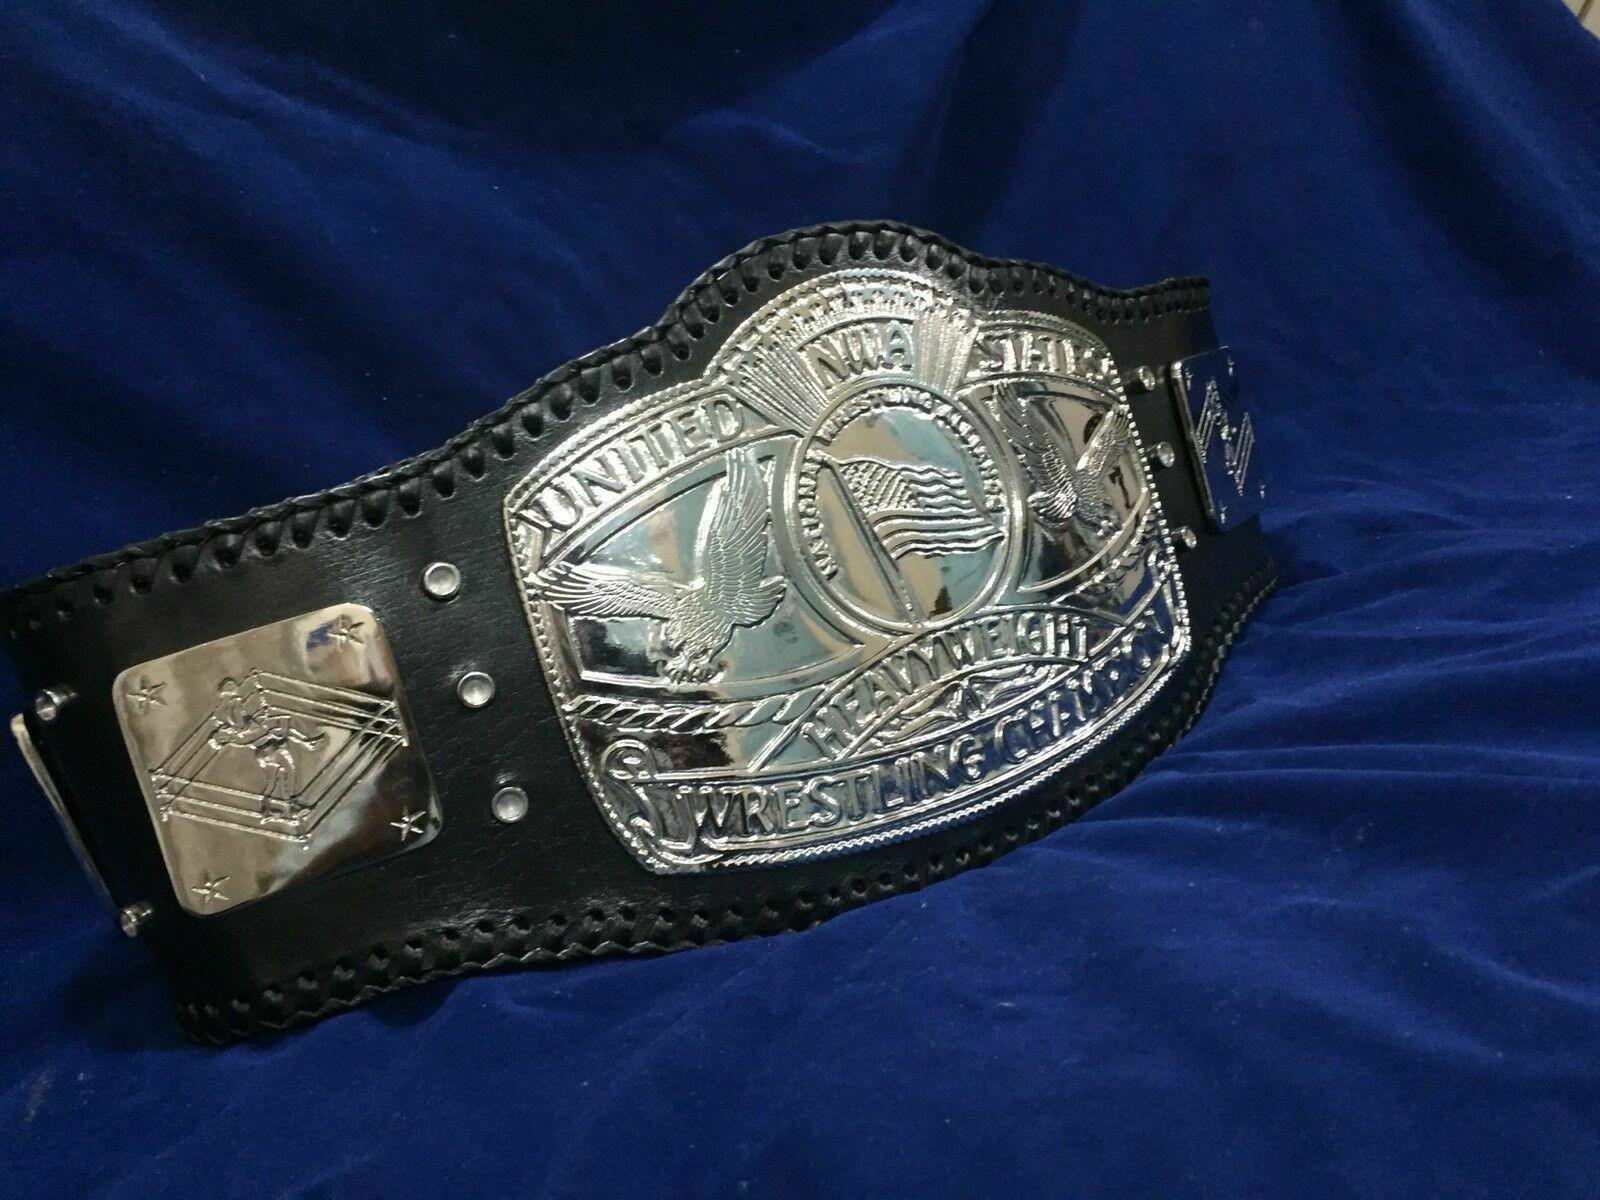 NWA USA HEAVYWEIGHT Zinc Championship Belt - Zees Belts